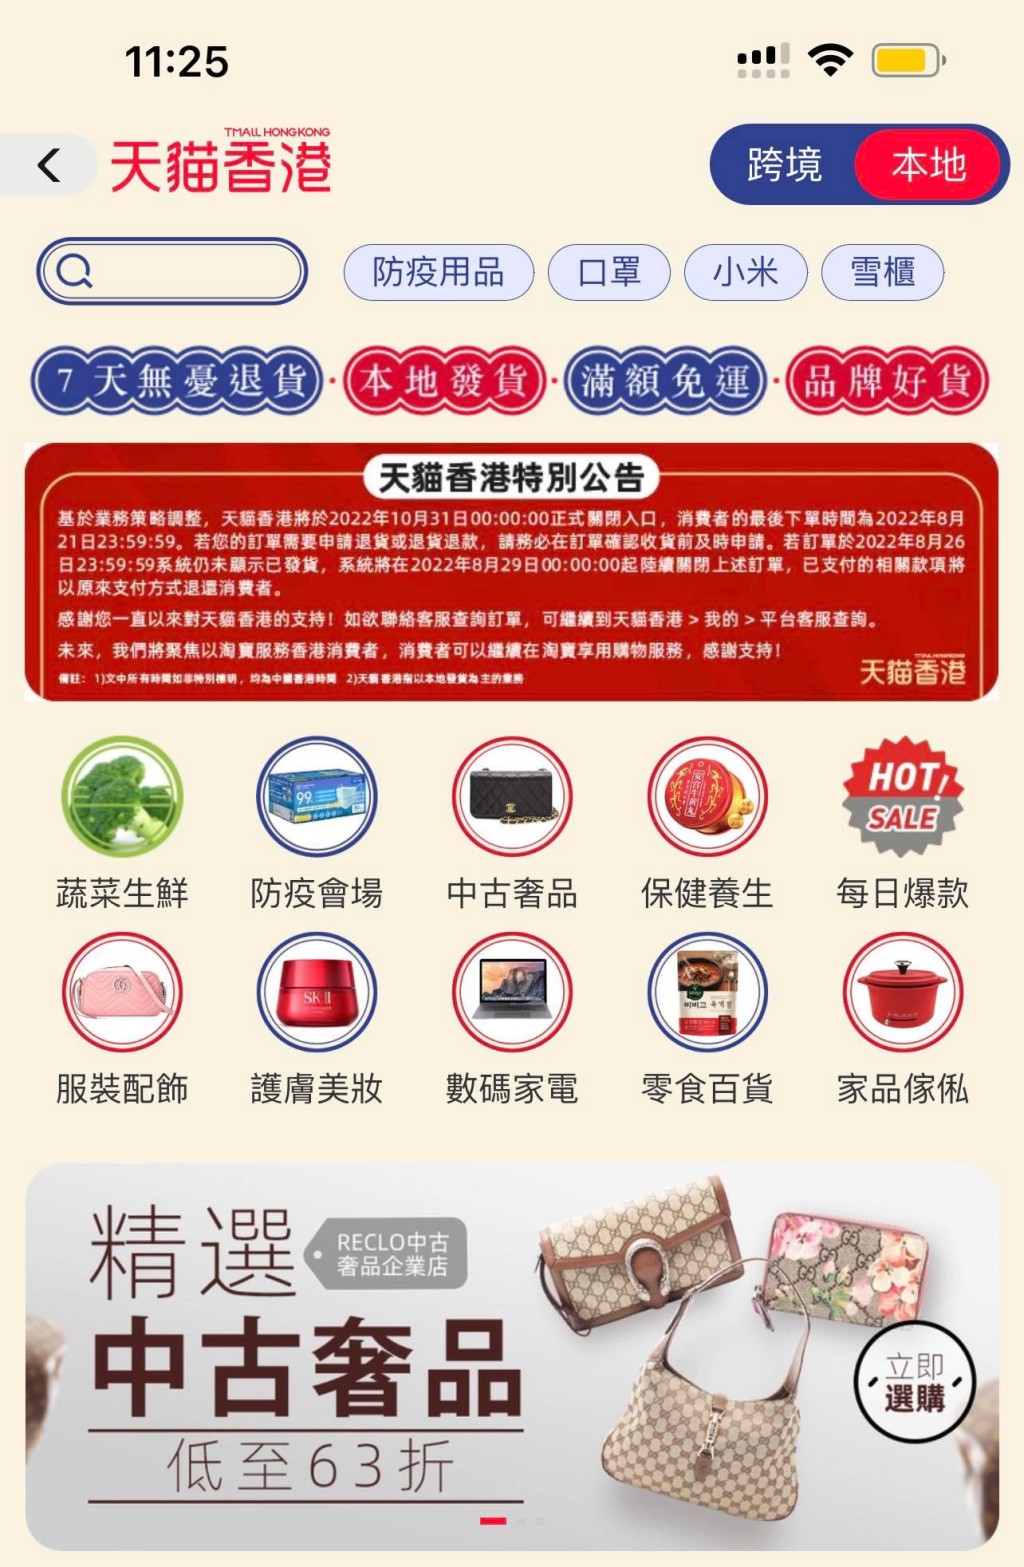 「天猫香港」在手机应用程式内亦贴出公告。APP截图